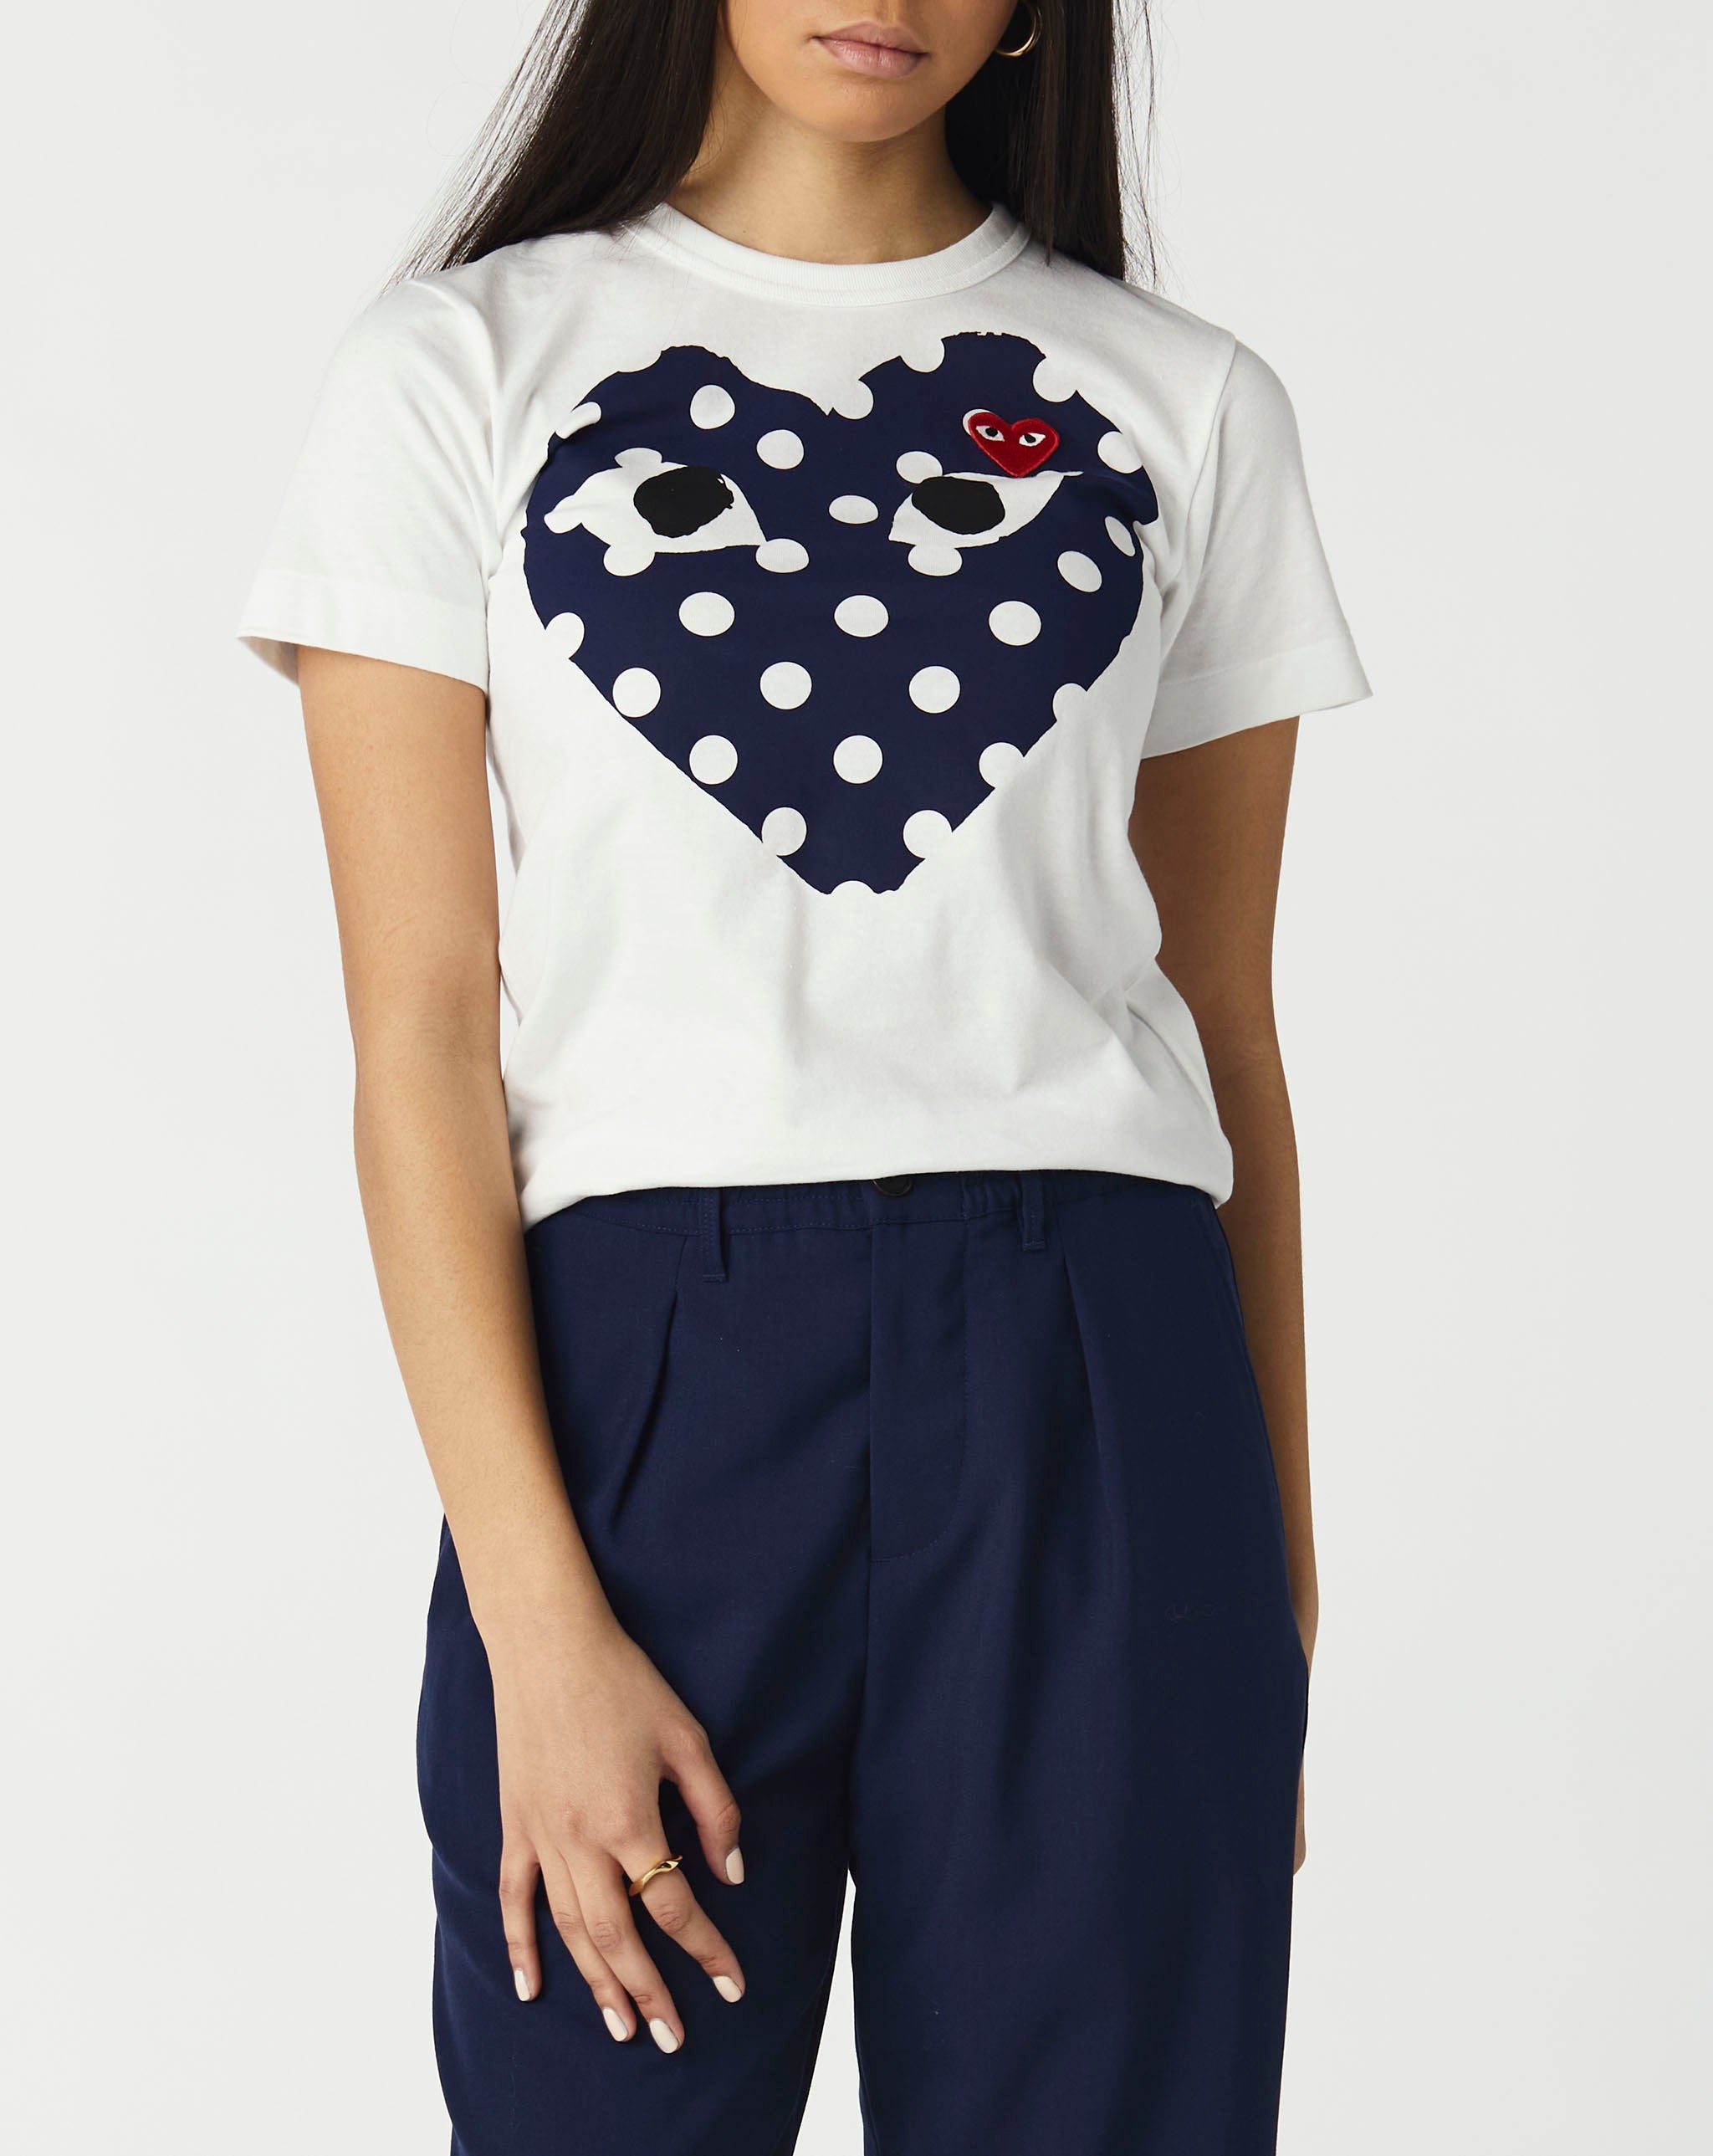 Womens Double Heart T-Shirt Women's Play Polka Dot T-Shirt  - Cheap Urlfreeze Jordan outlet